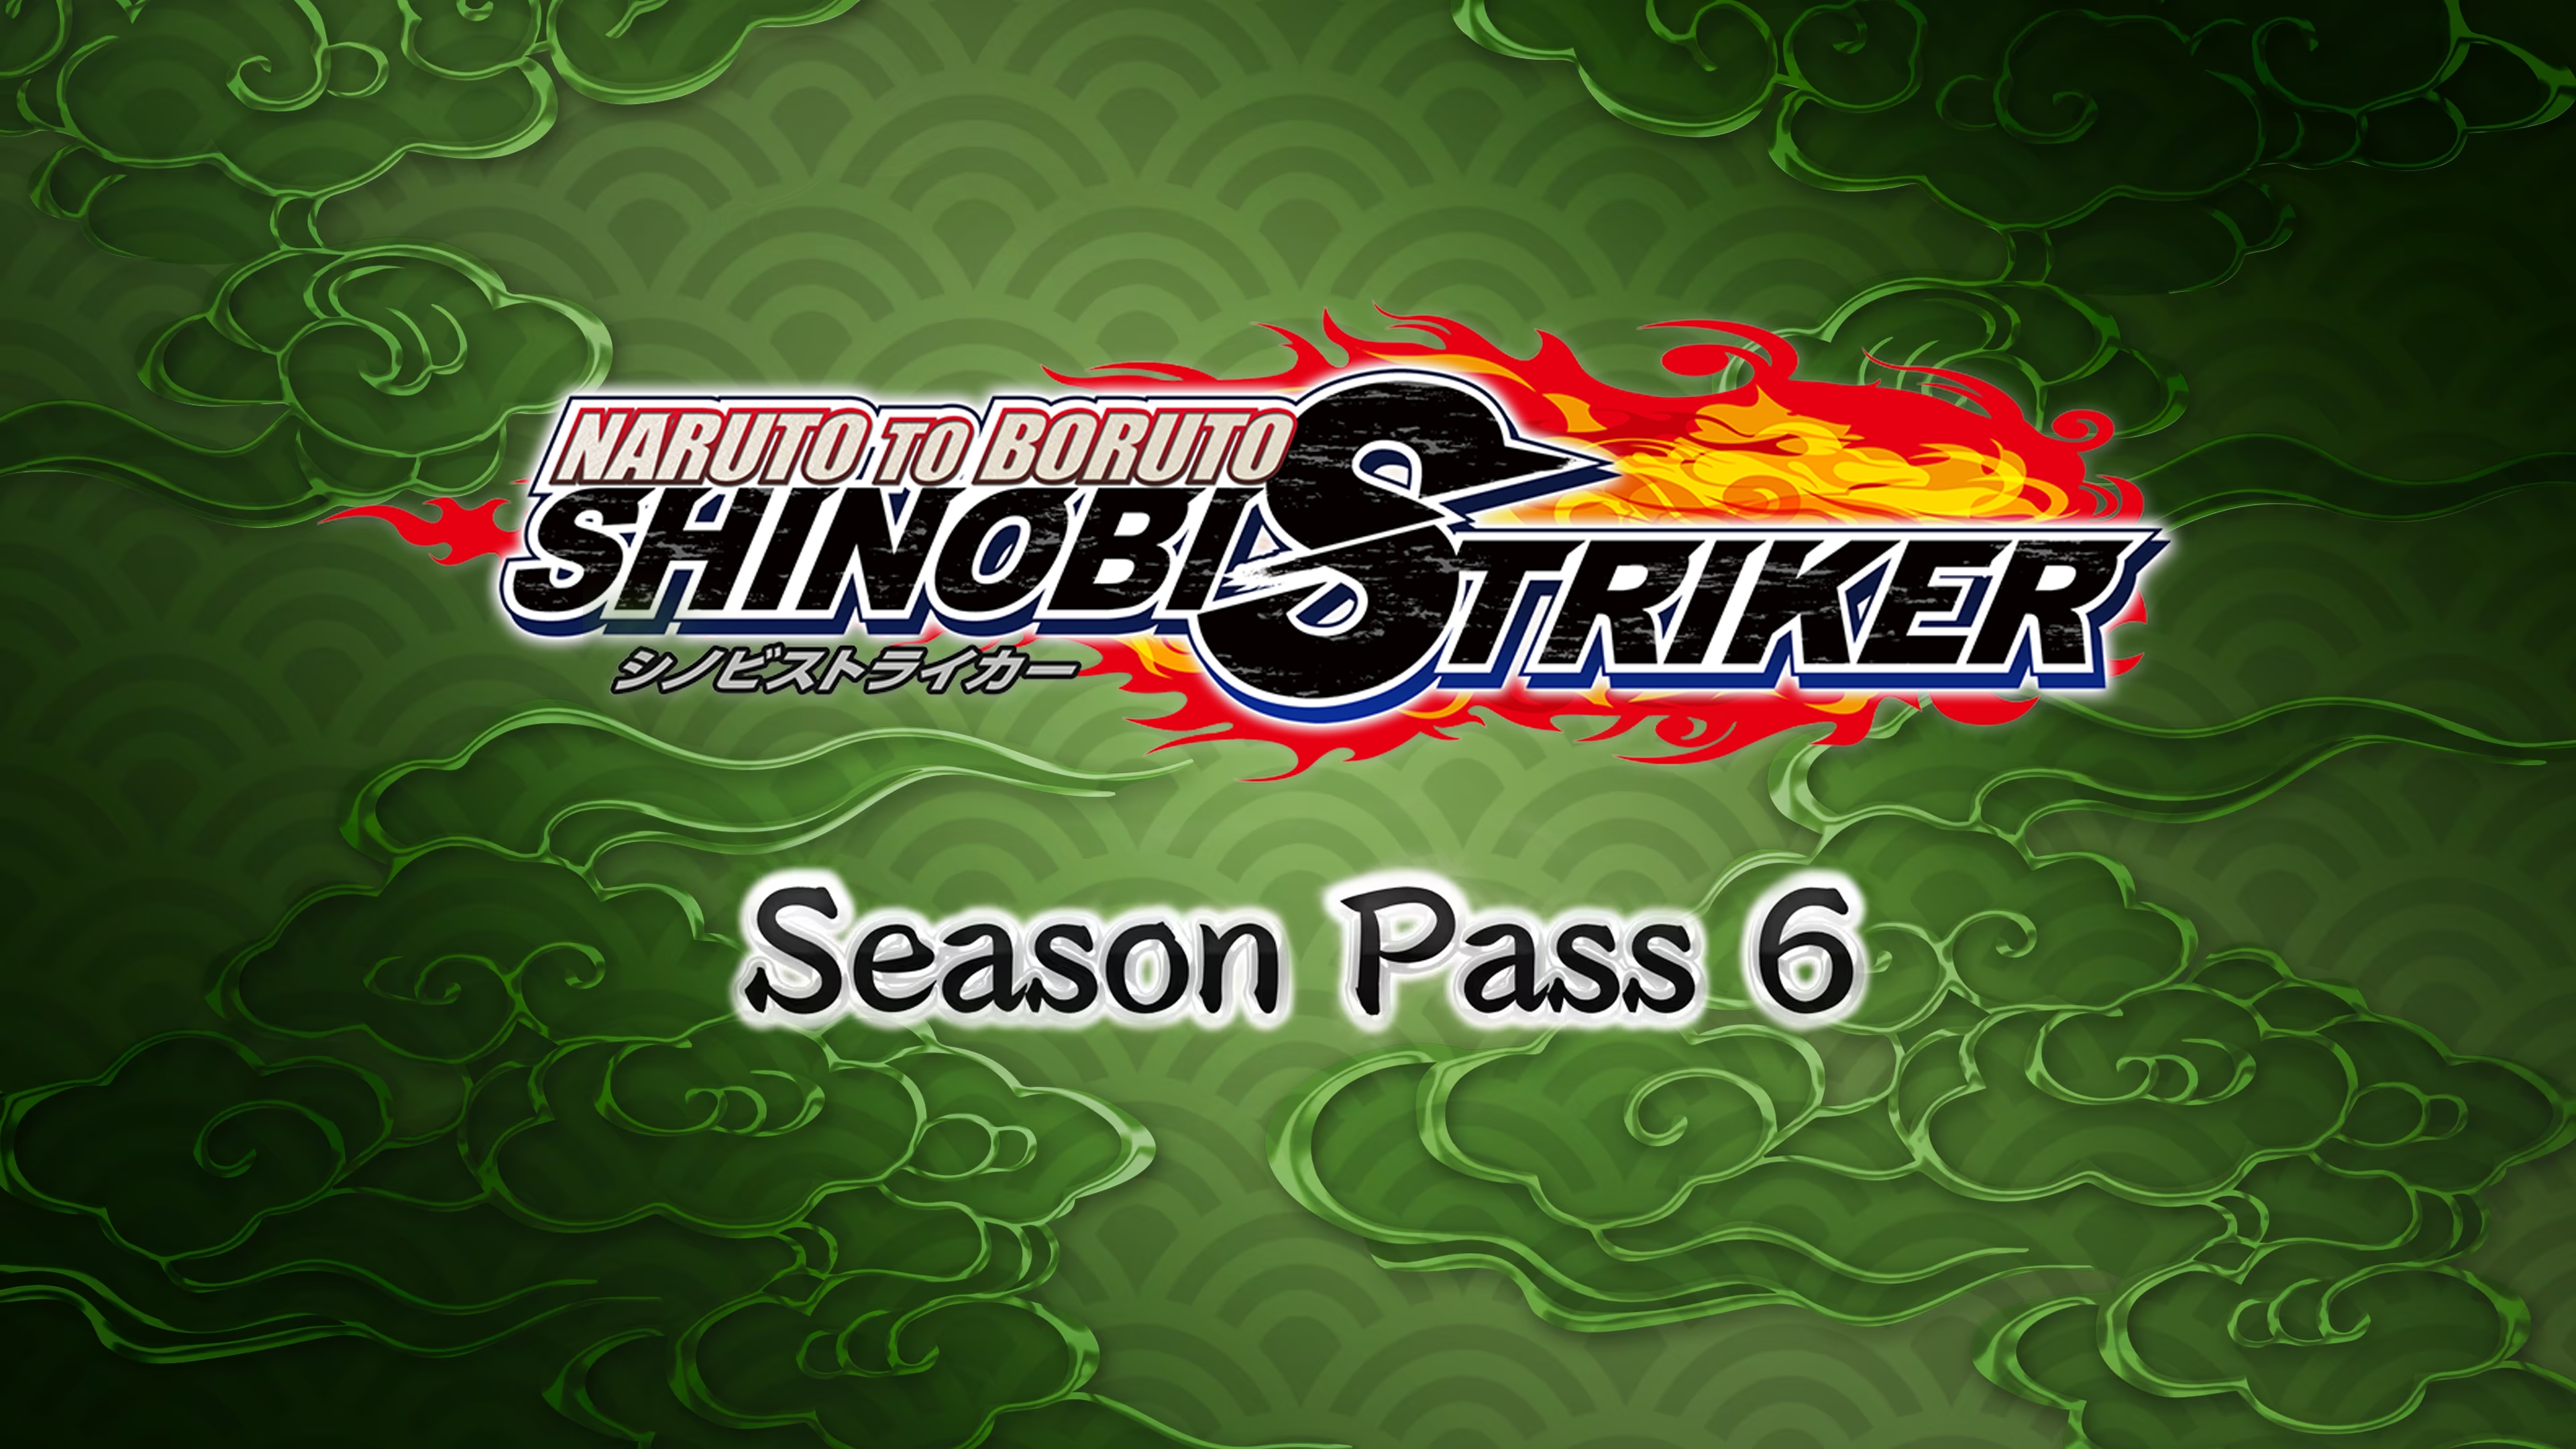 NARUTO TO BORUTO: SHINOBI STRIKER Season Pass